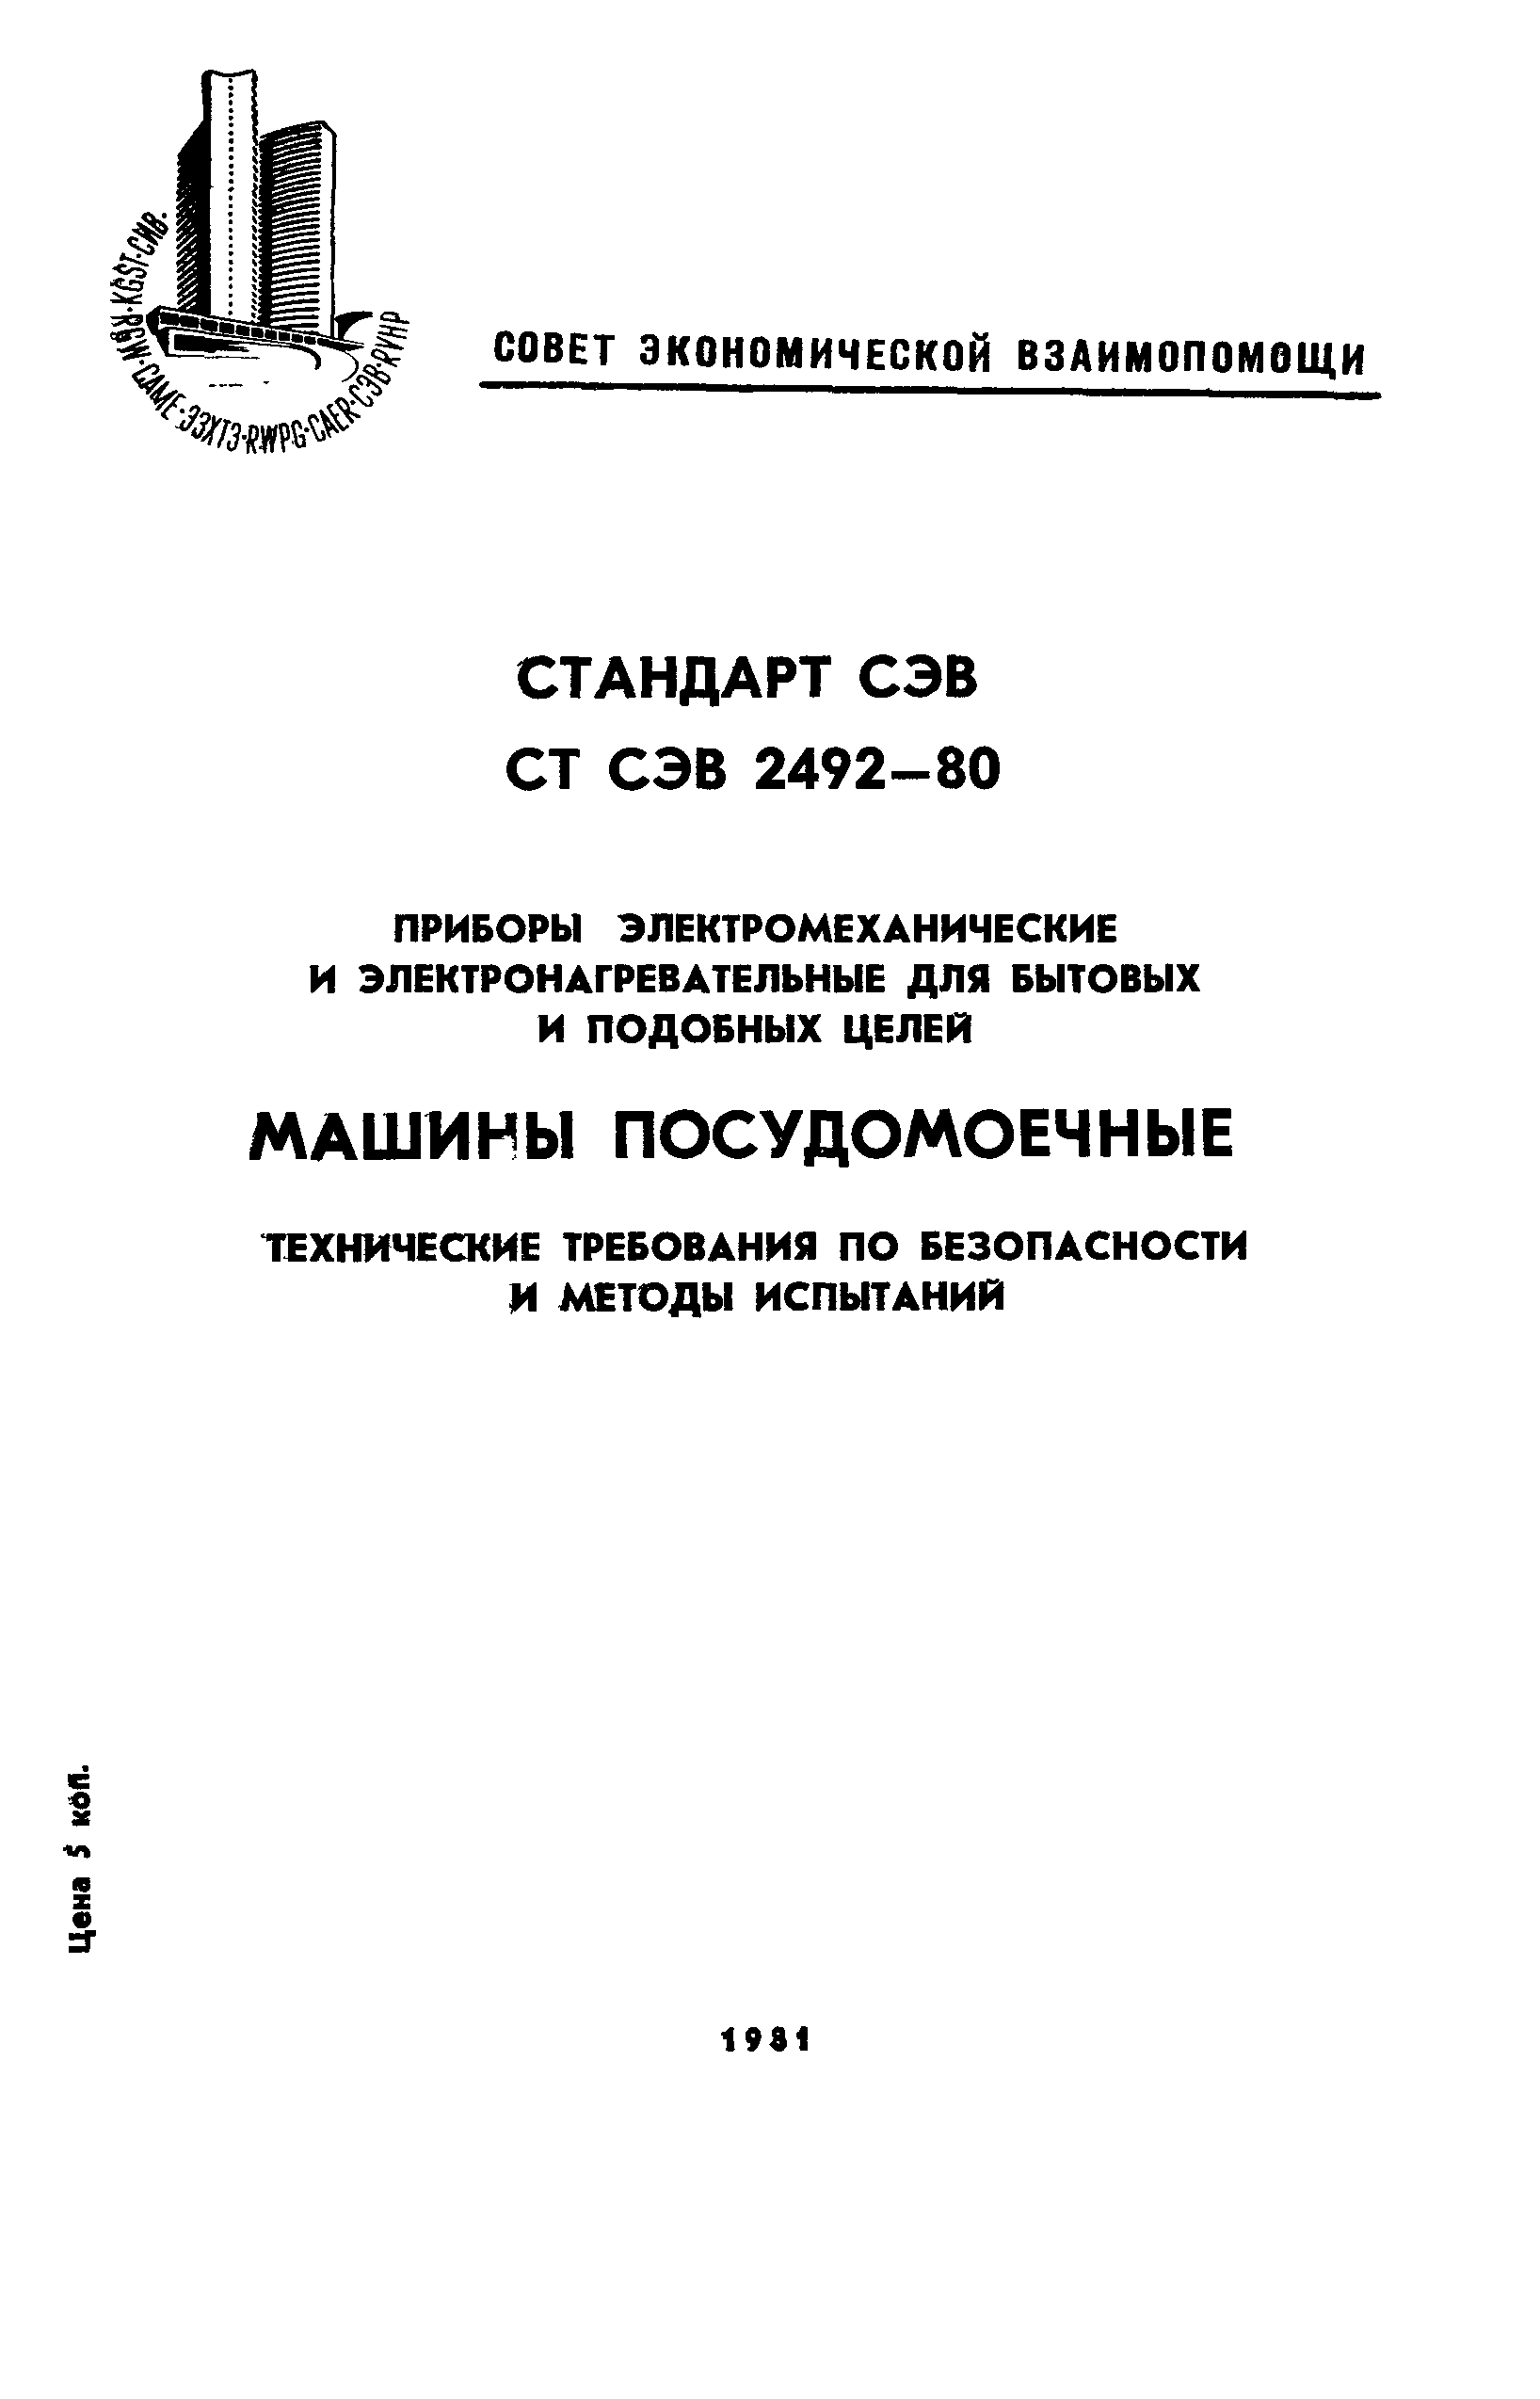 СТ СЭВ 2492-80